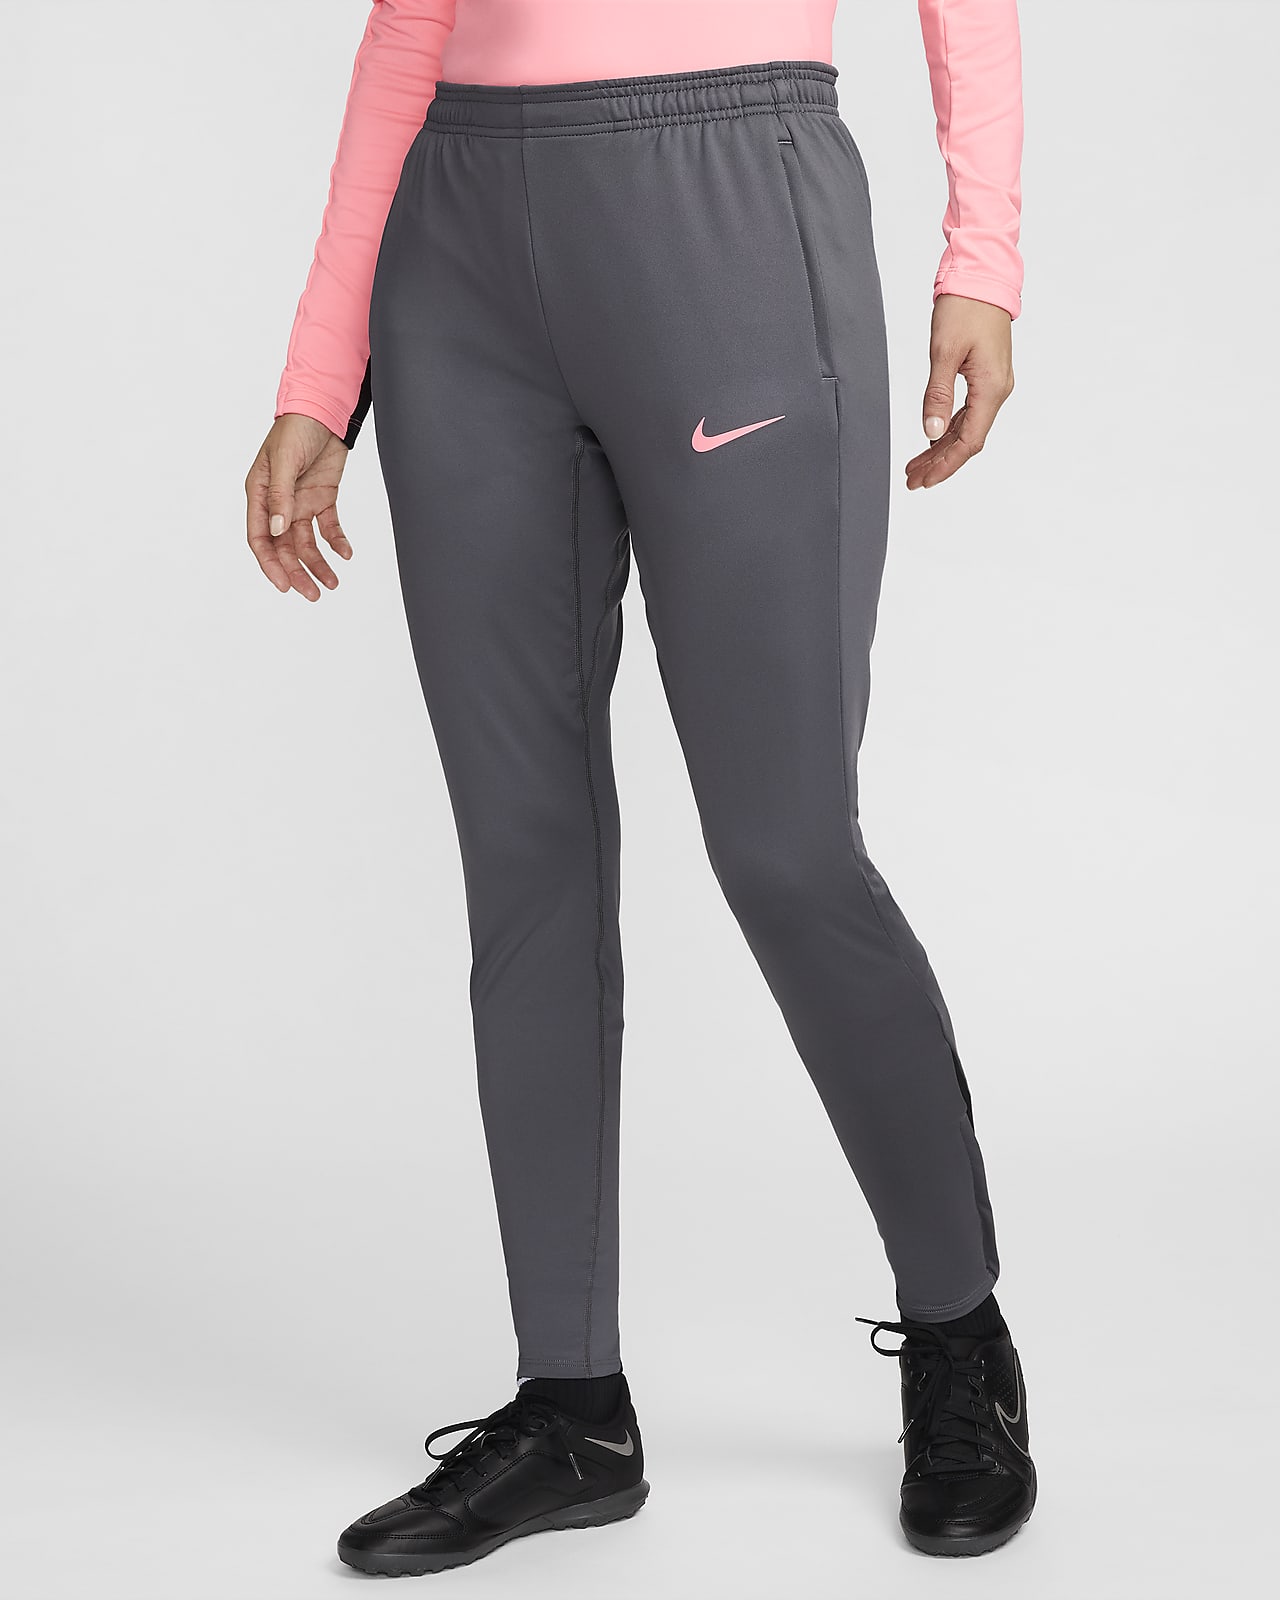 Pantalon de foot Dri-FIT Nike Strike pour femme